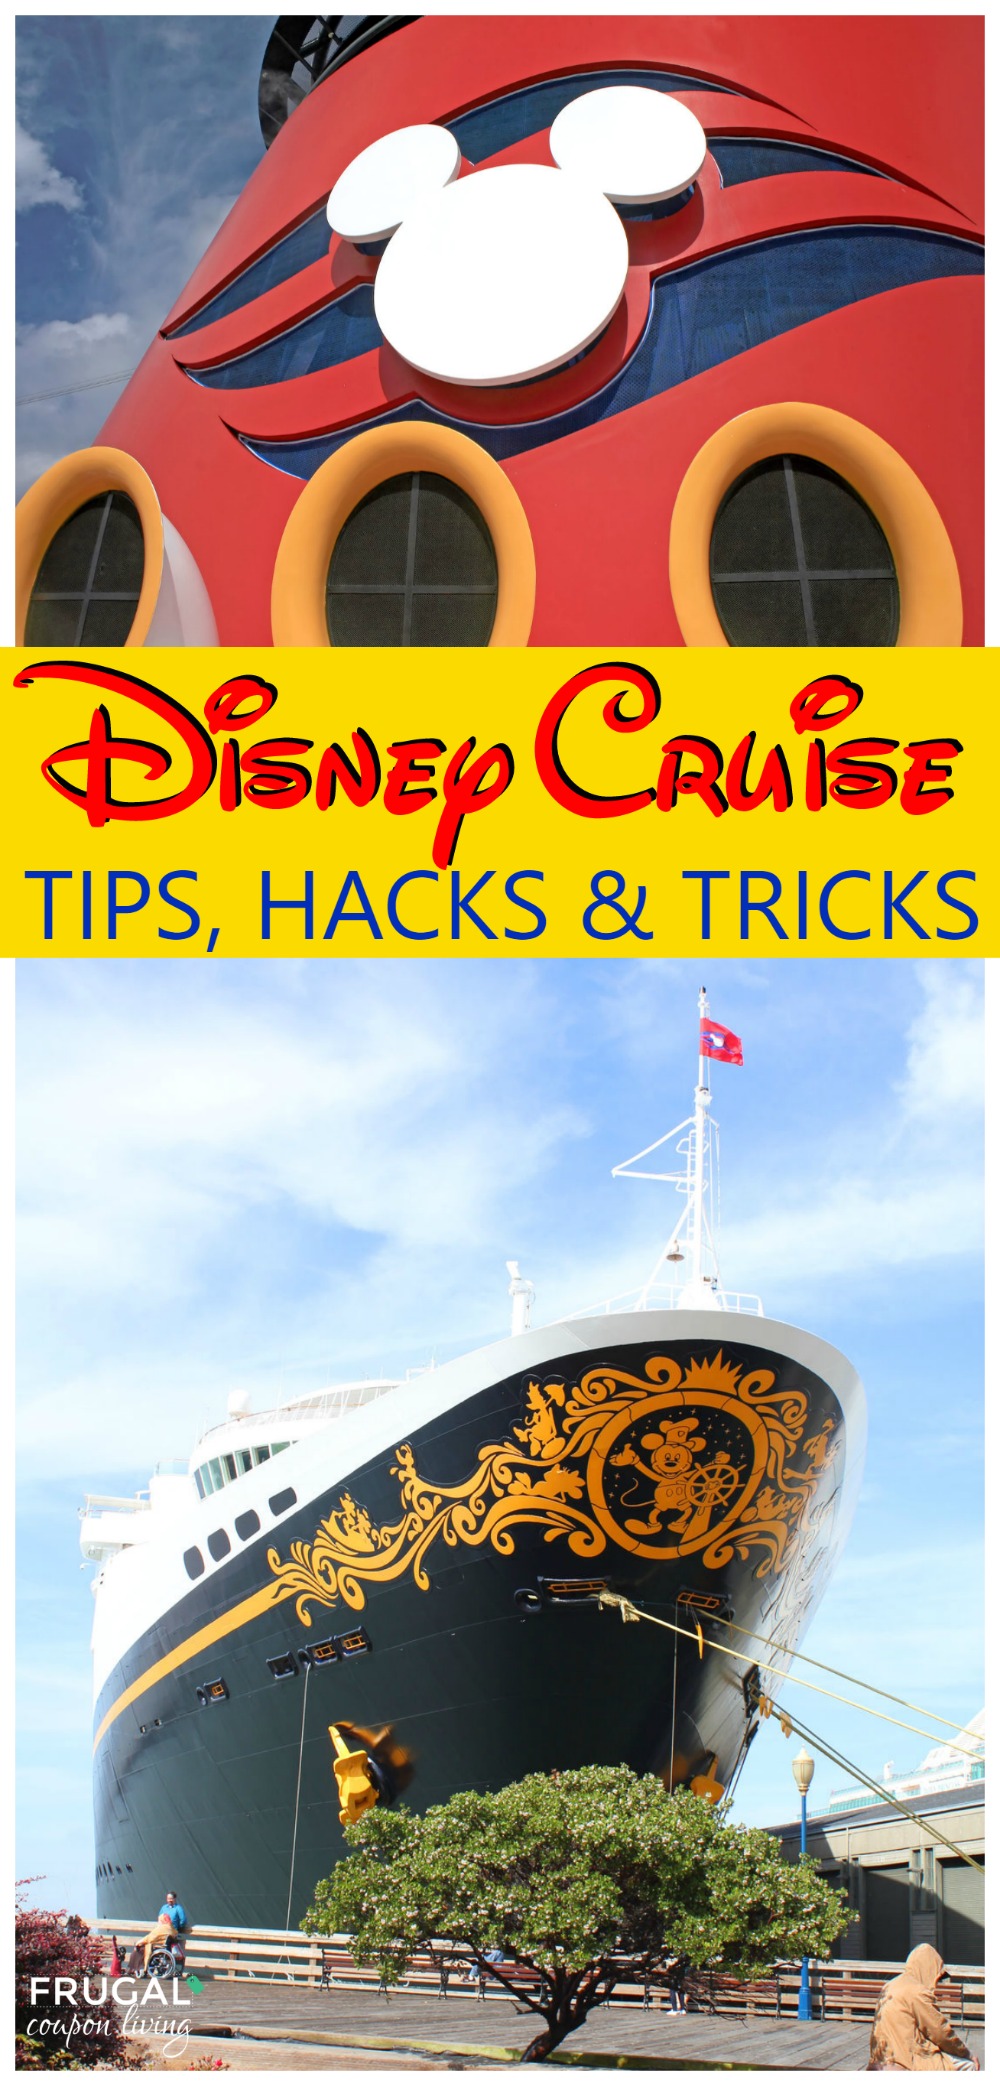 Disney-Cruise-Tips-Hacks-Tricks-Frugal-Coupon-Living